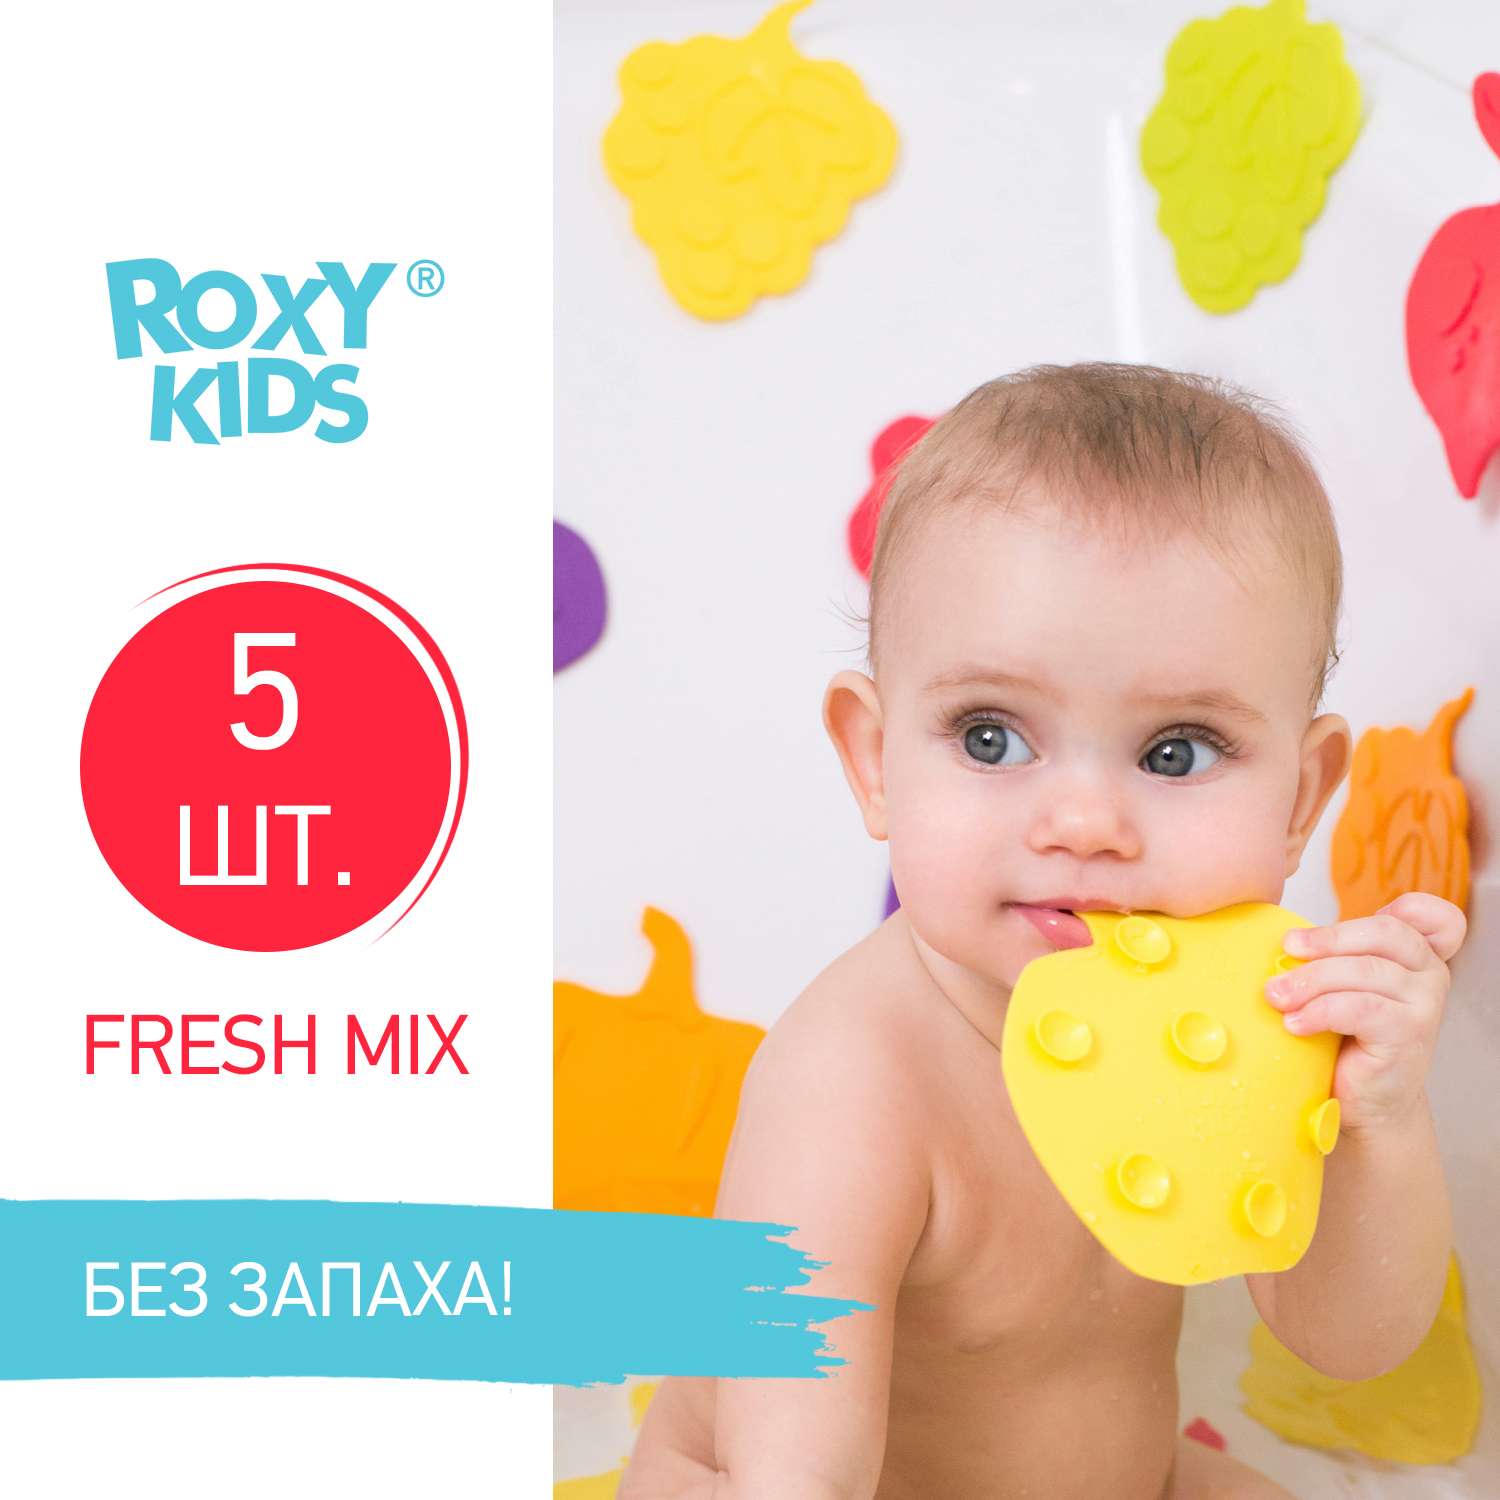 Мини-коврики детские ROXY-KIDS для ванной противоскользящие FRESH MIX 5 шт цвета в ассортименте - фото 2